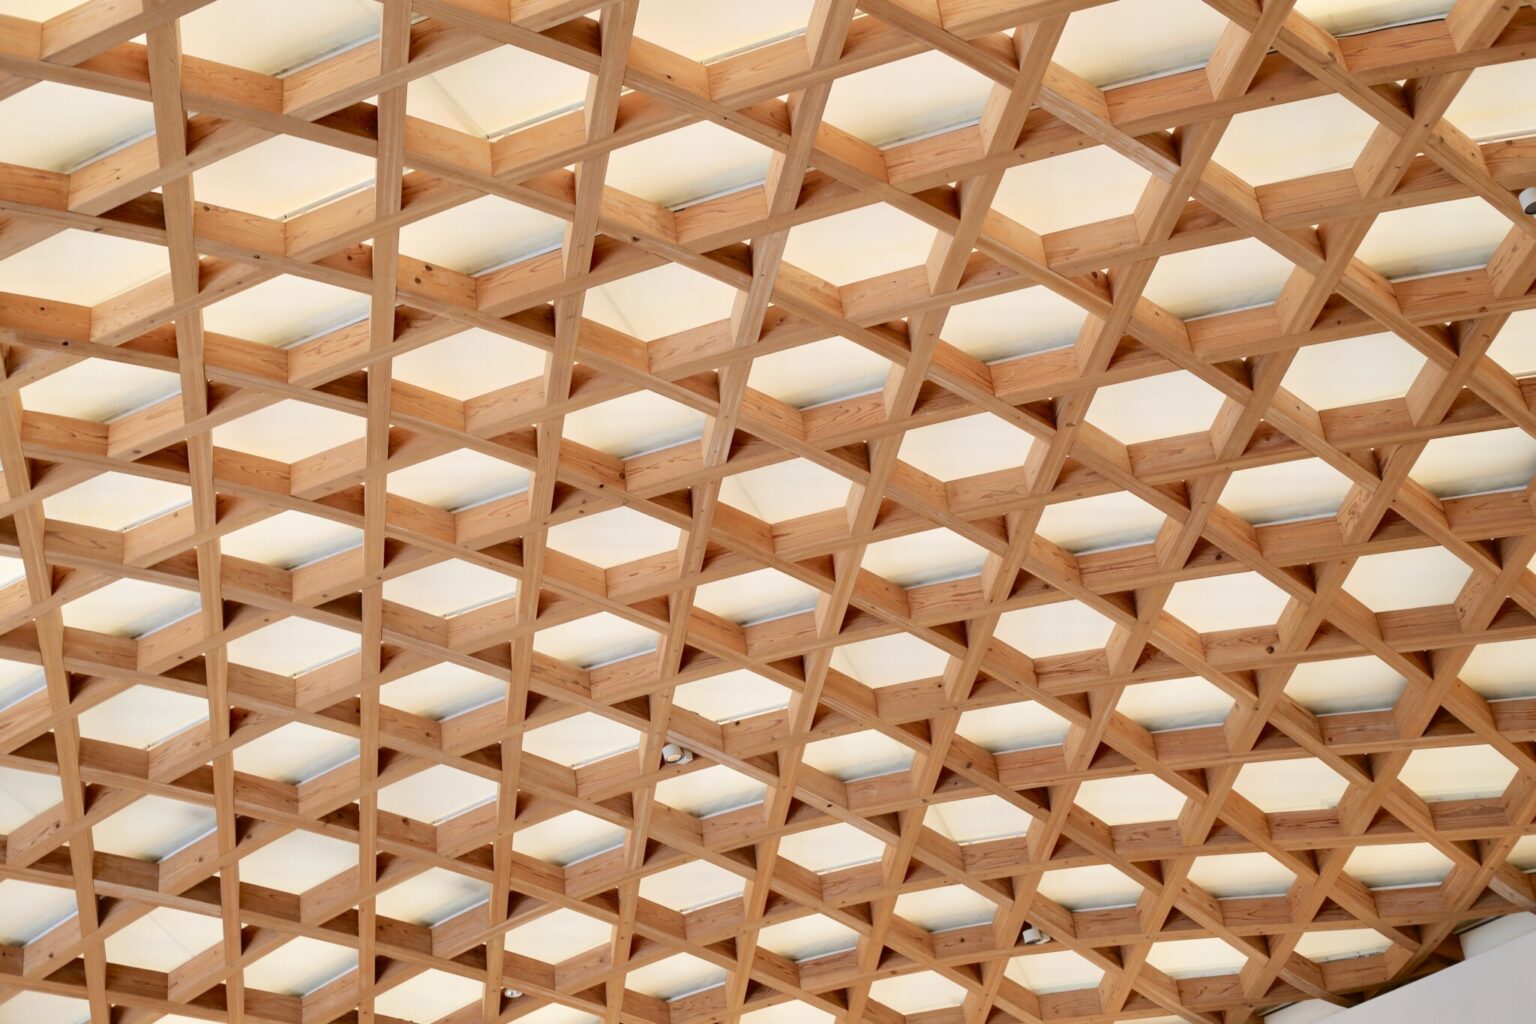 「天庭」の天井部分は、大分の伝統工芸、竹細工の六つ編みをイメージしたもの。